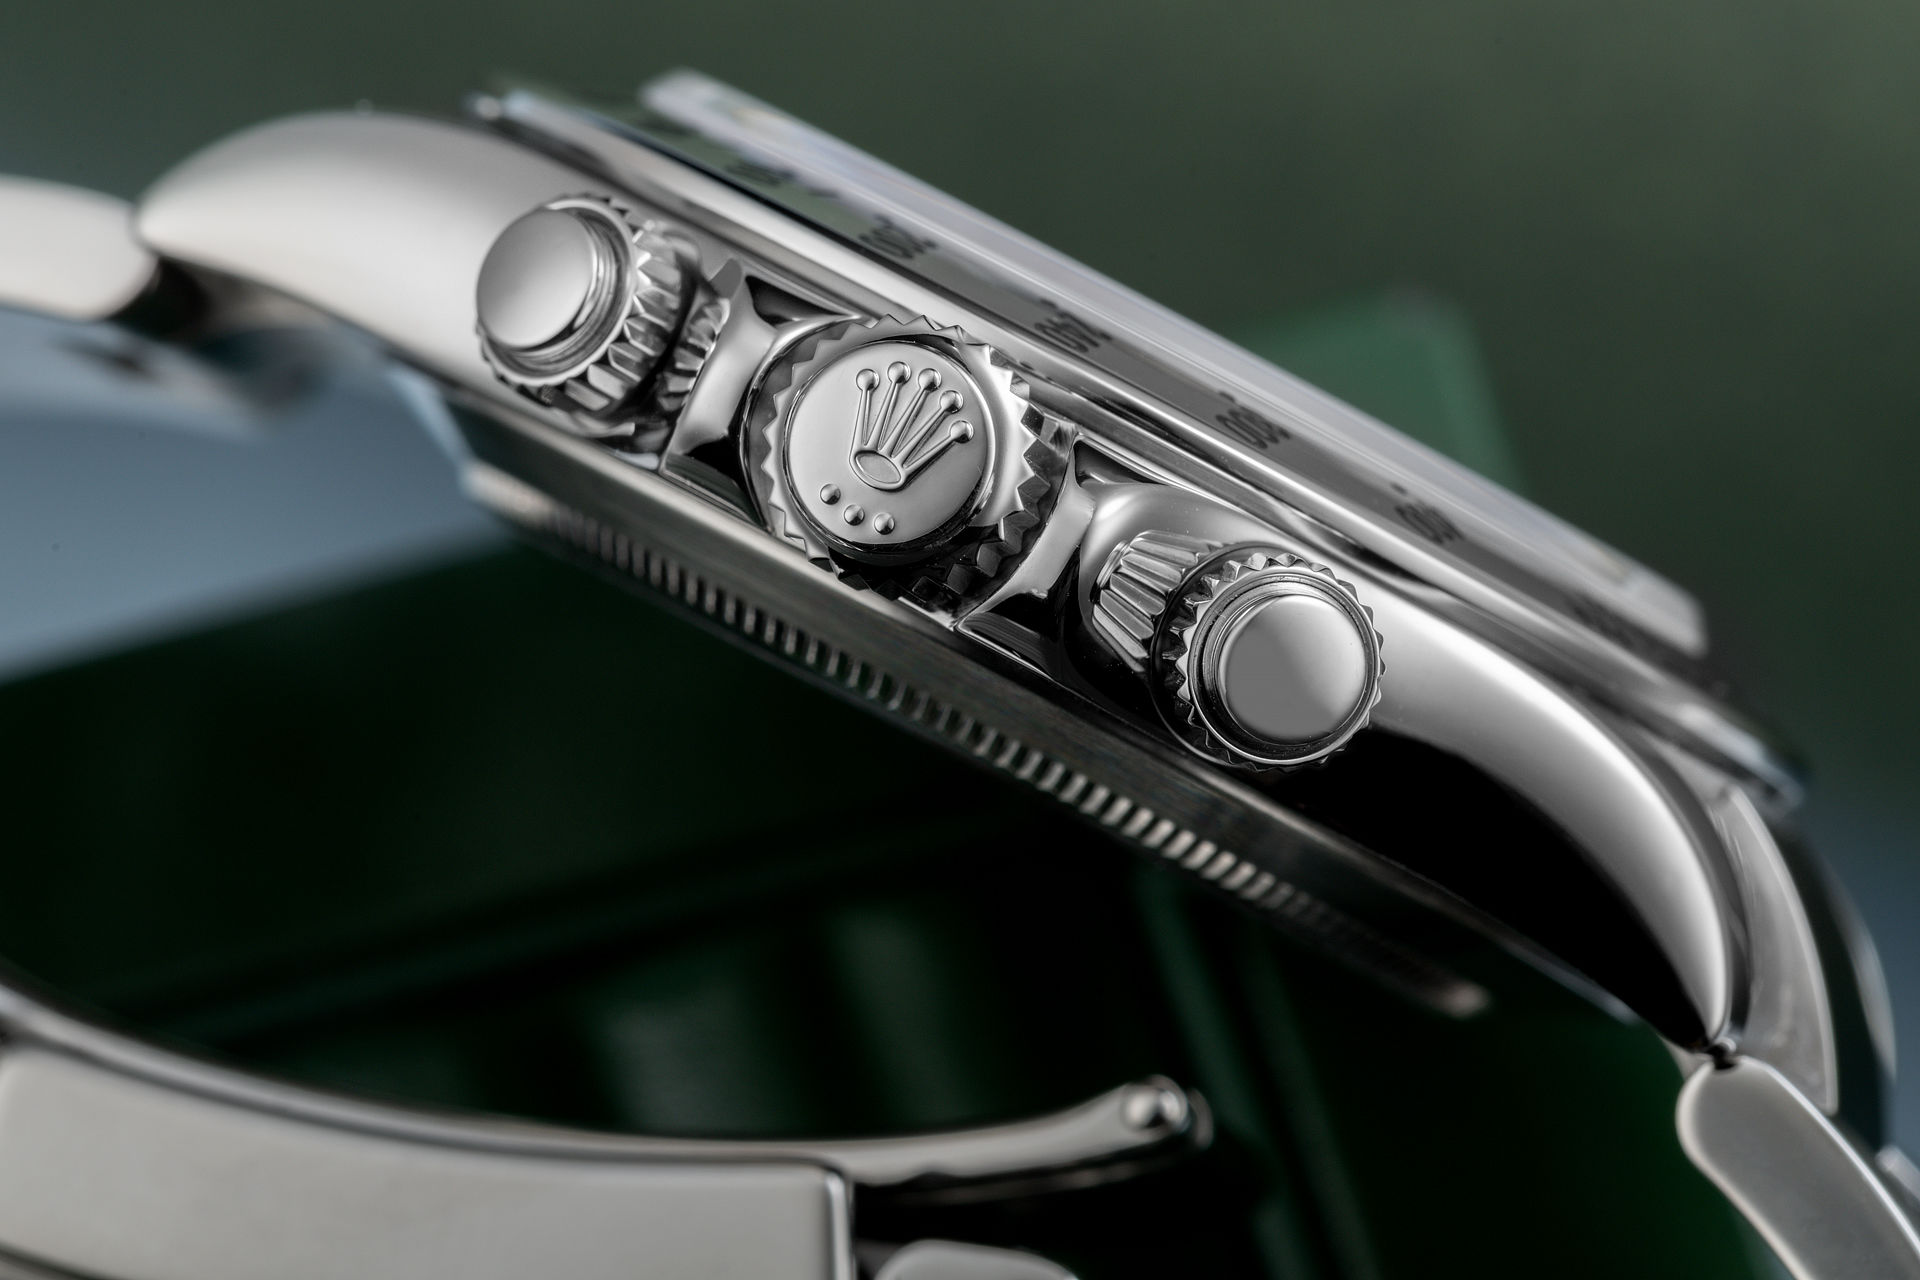 ref 116520 | Under Rolex Warranty | Rolex Cosmograph Daytona